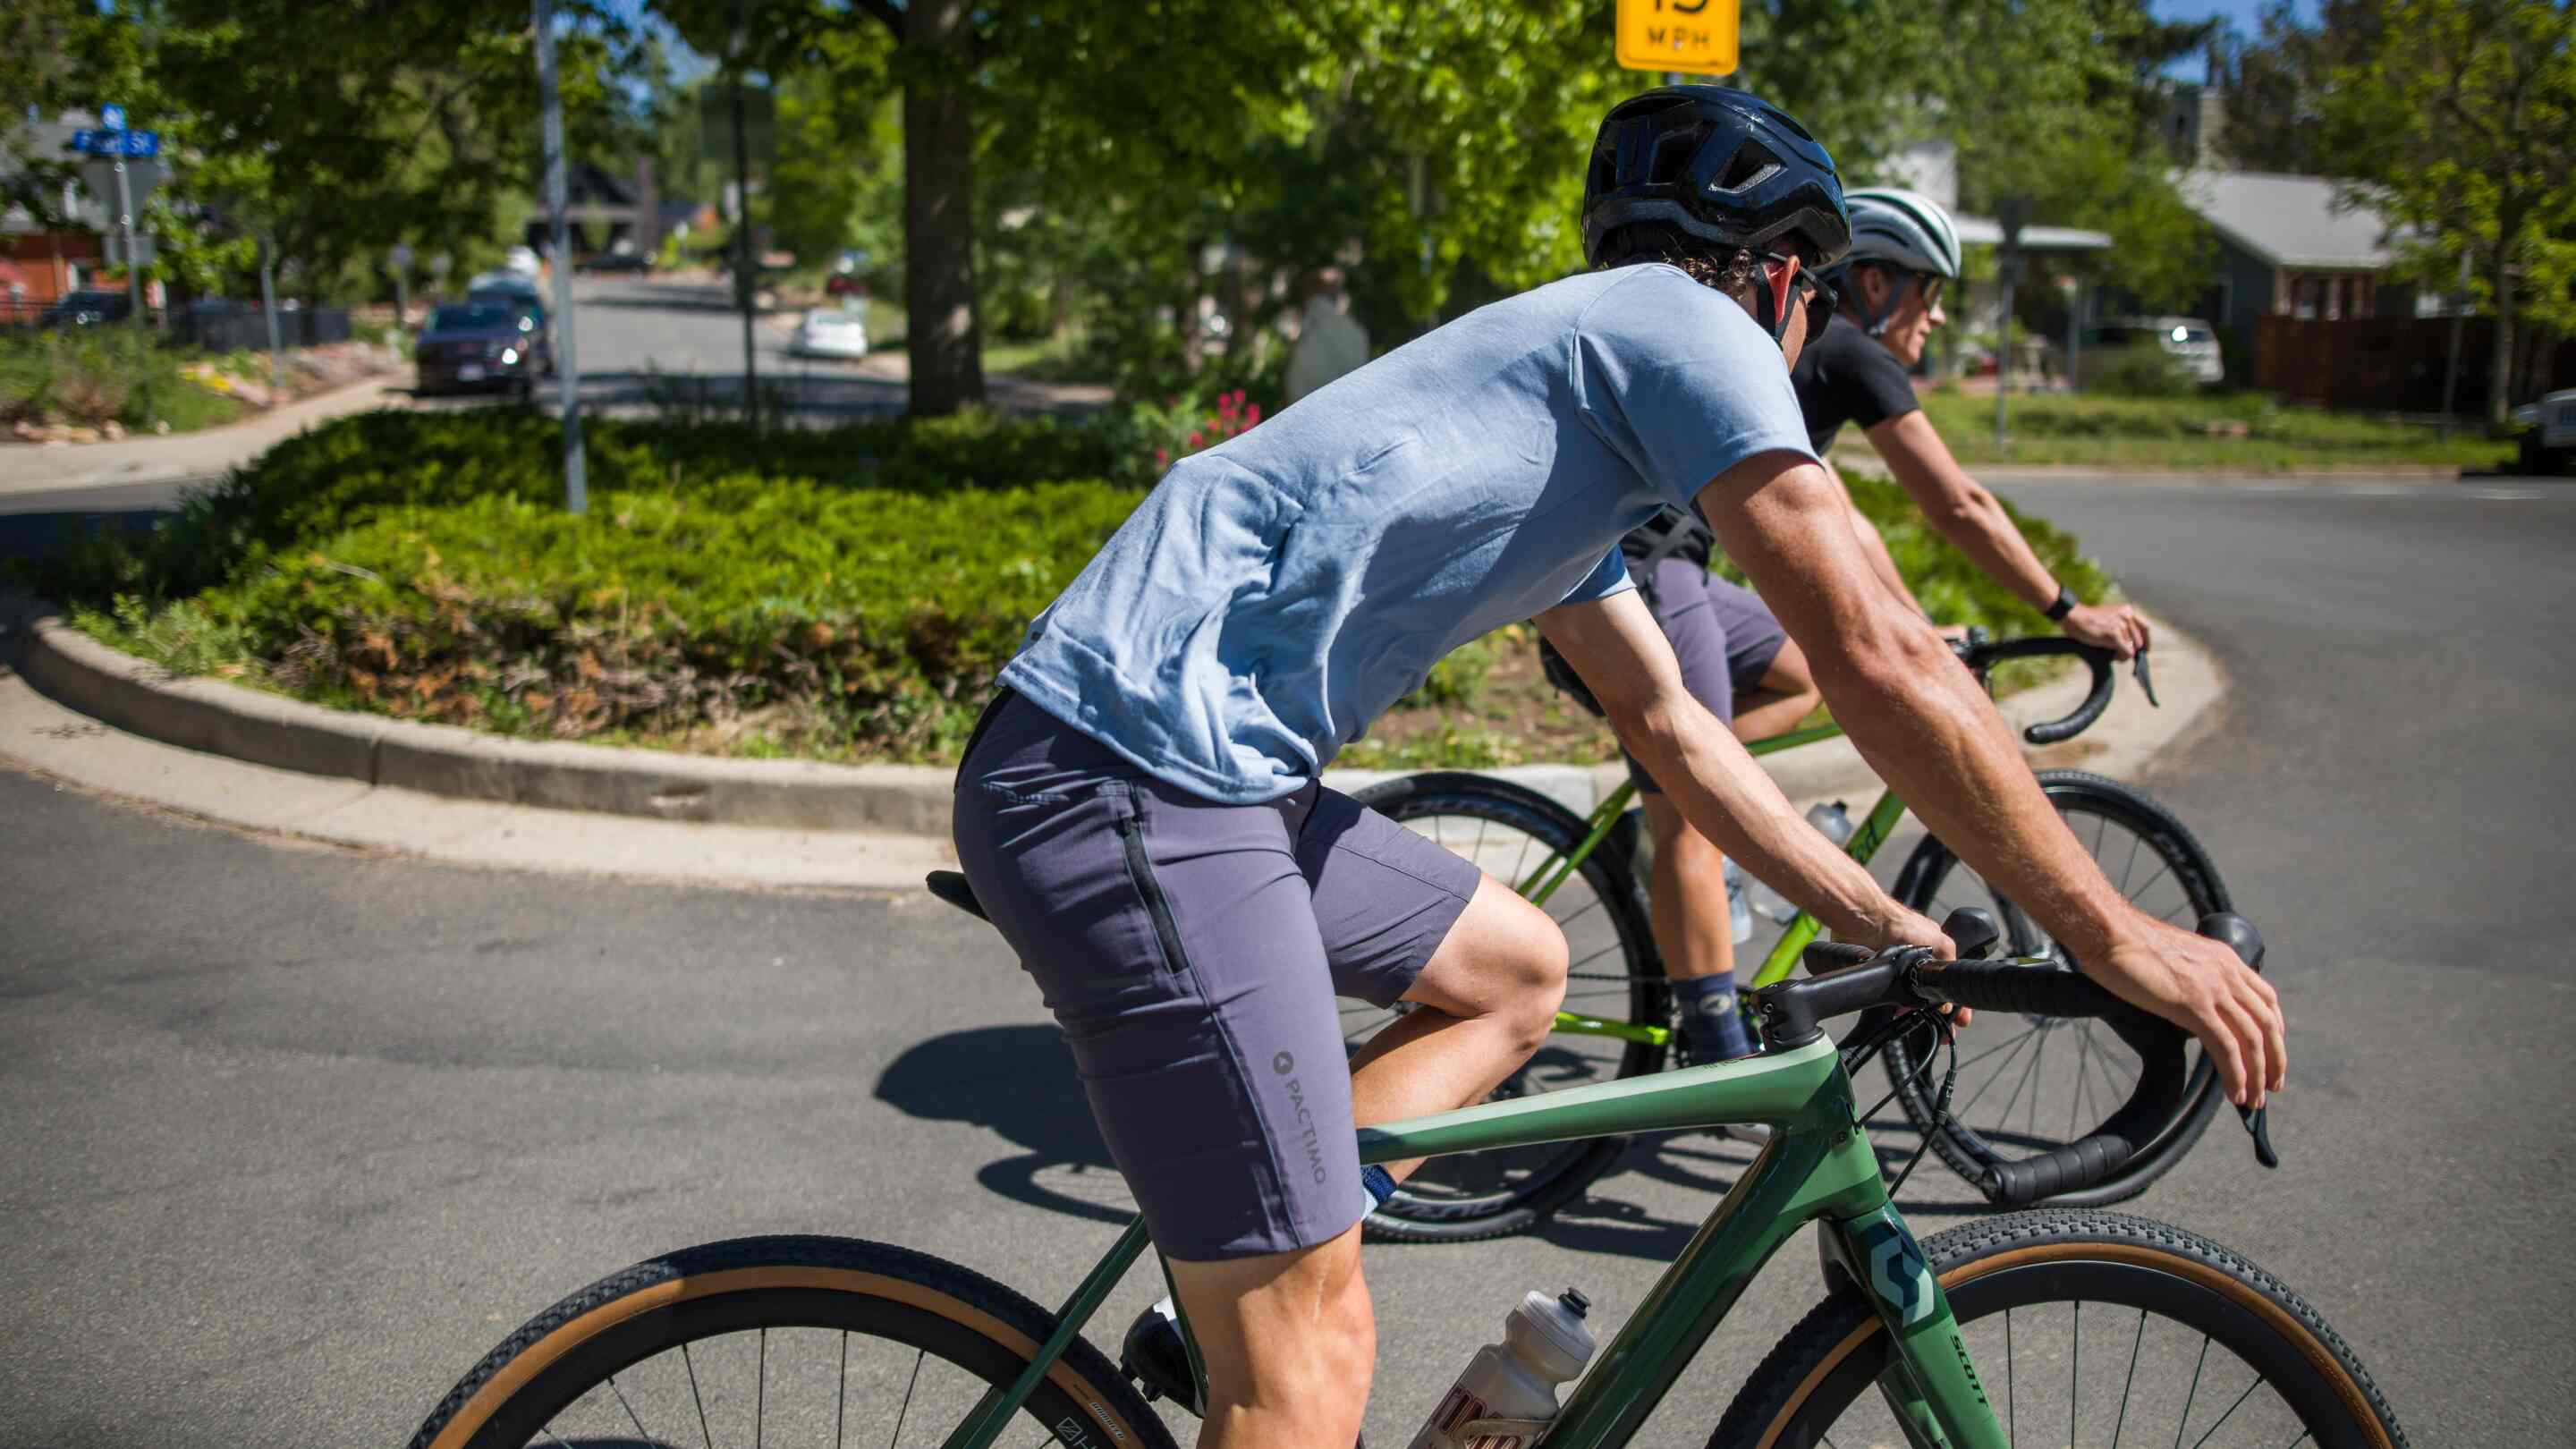 primalblends Commuter Bike Clothing for Men